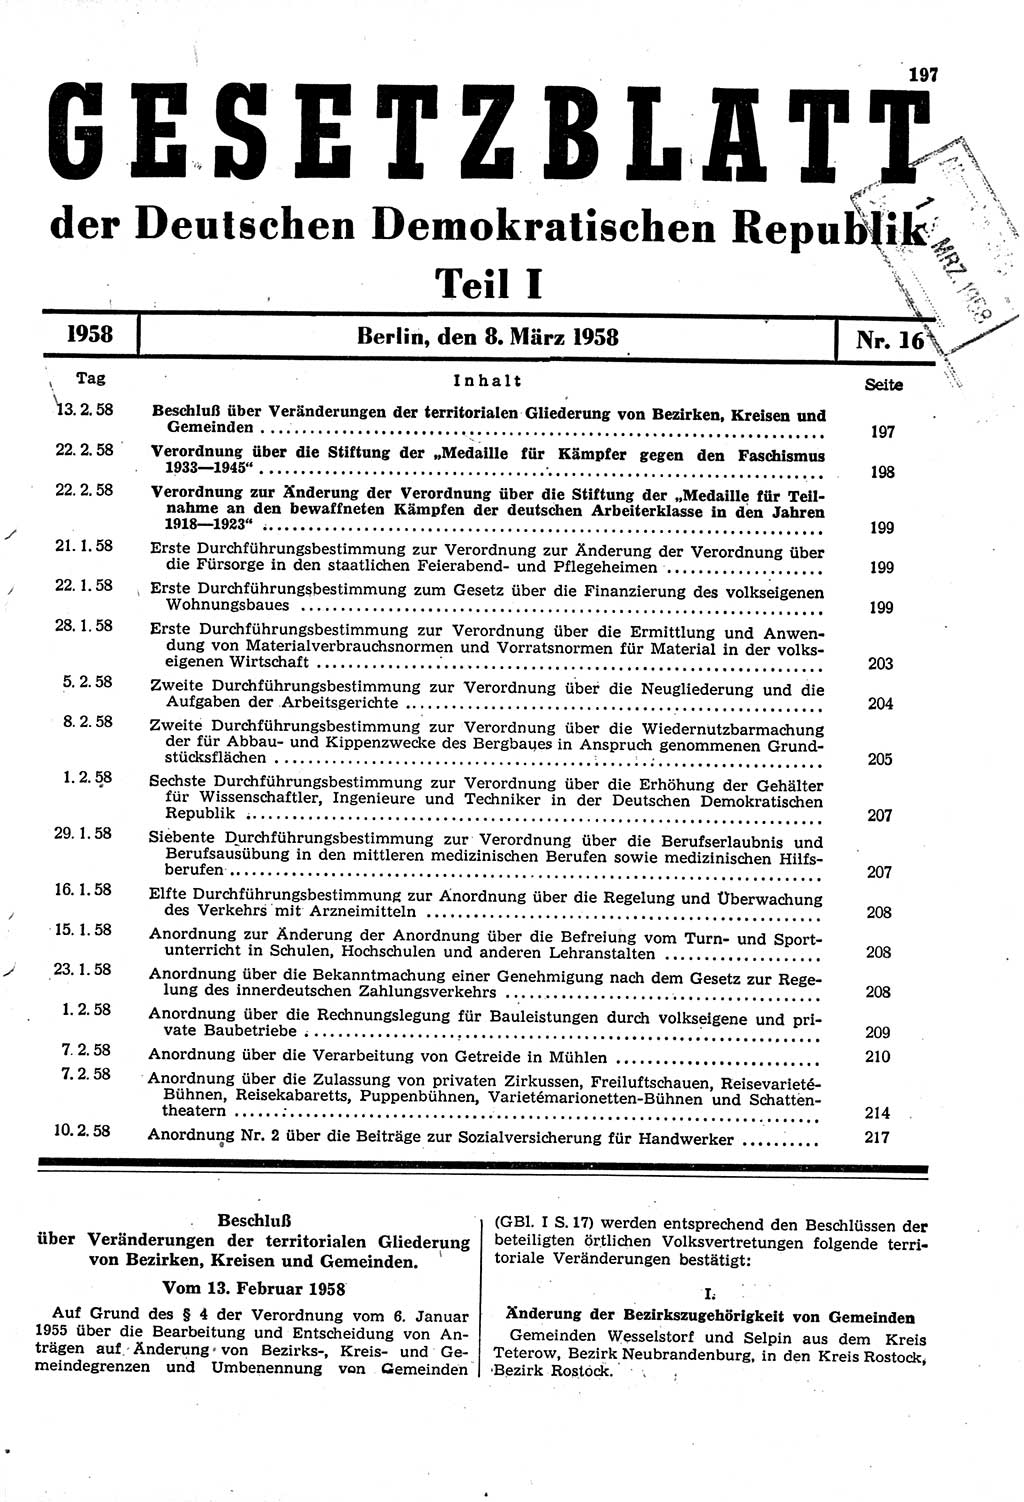 Gesetzblatt (GBl.) der Deutschen Demokratischen Republik (DDR) Teil Ⅰ 1958, Seite 197 (GBl. DDR Ⅰ 1958, S. 197)